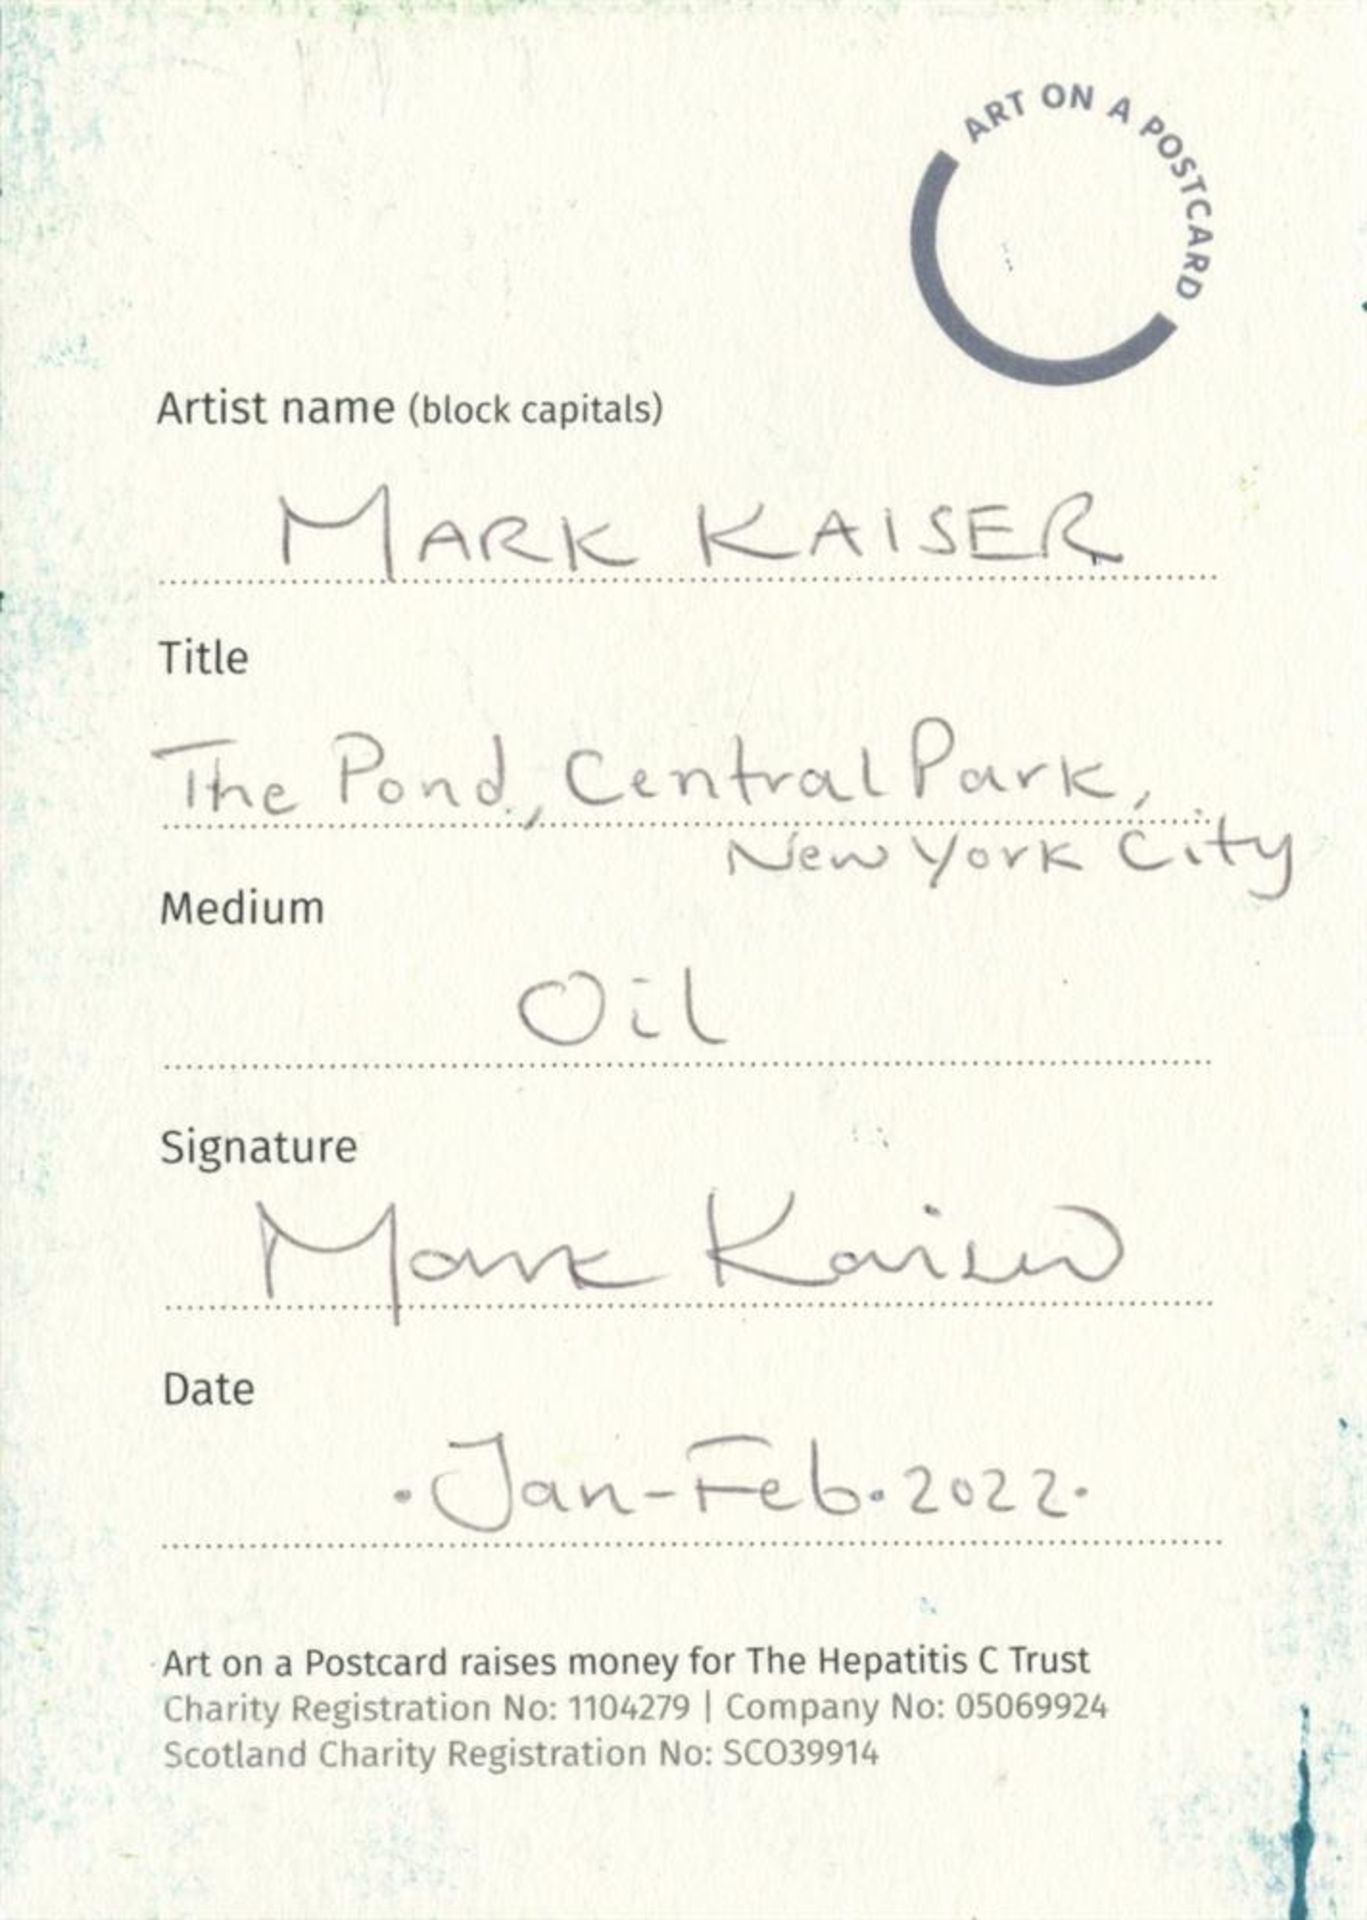 Mark Kaiser, The Pond, Central Park, New York City, 2022 - Image 2 of 3